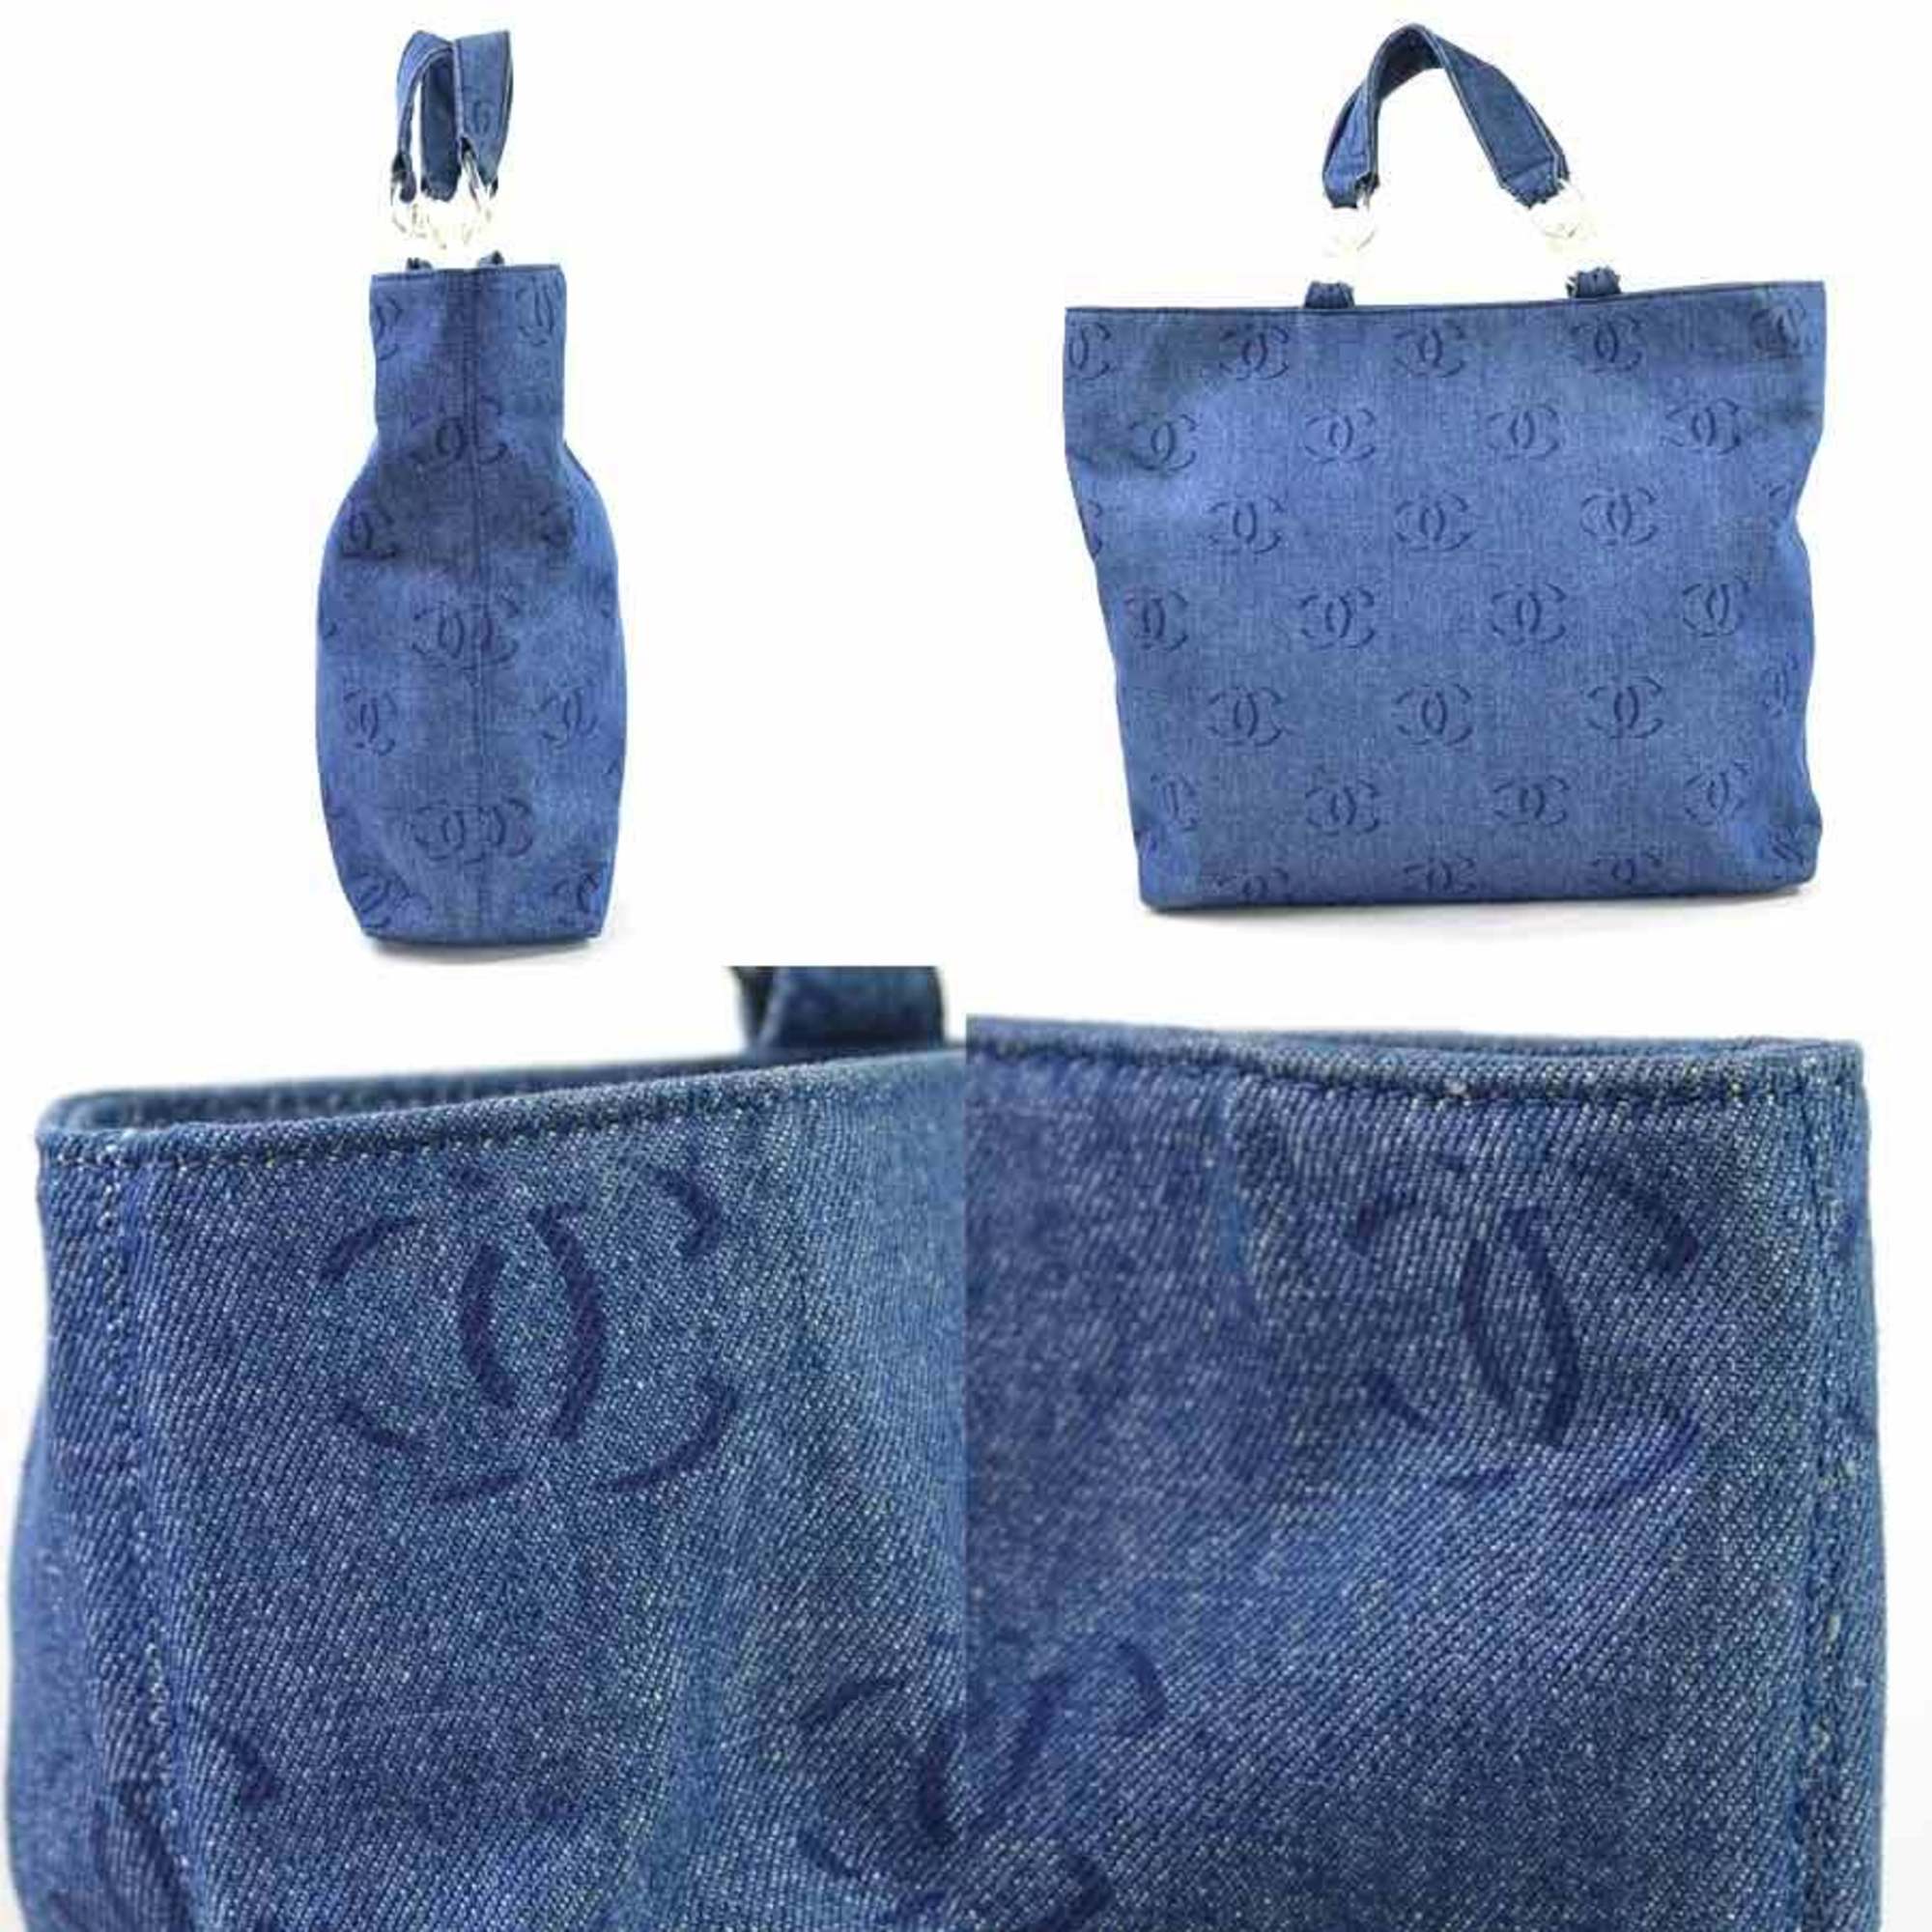 Chanel Handbag Tote Bag Vichy Line Denim Blue CHANEL Ladies i0346